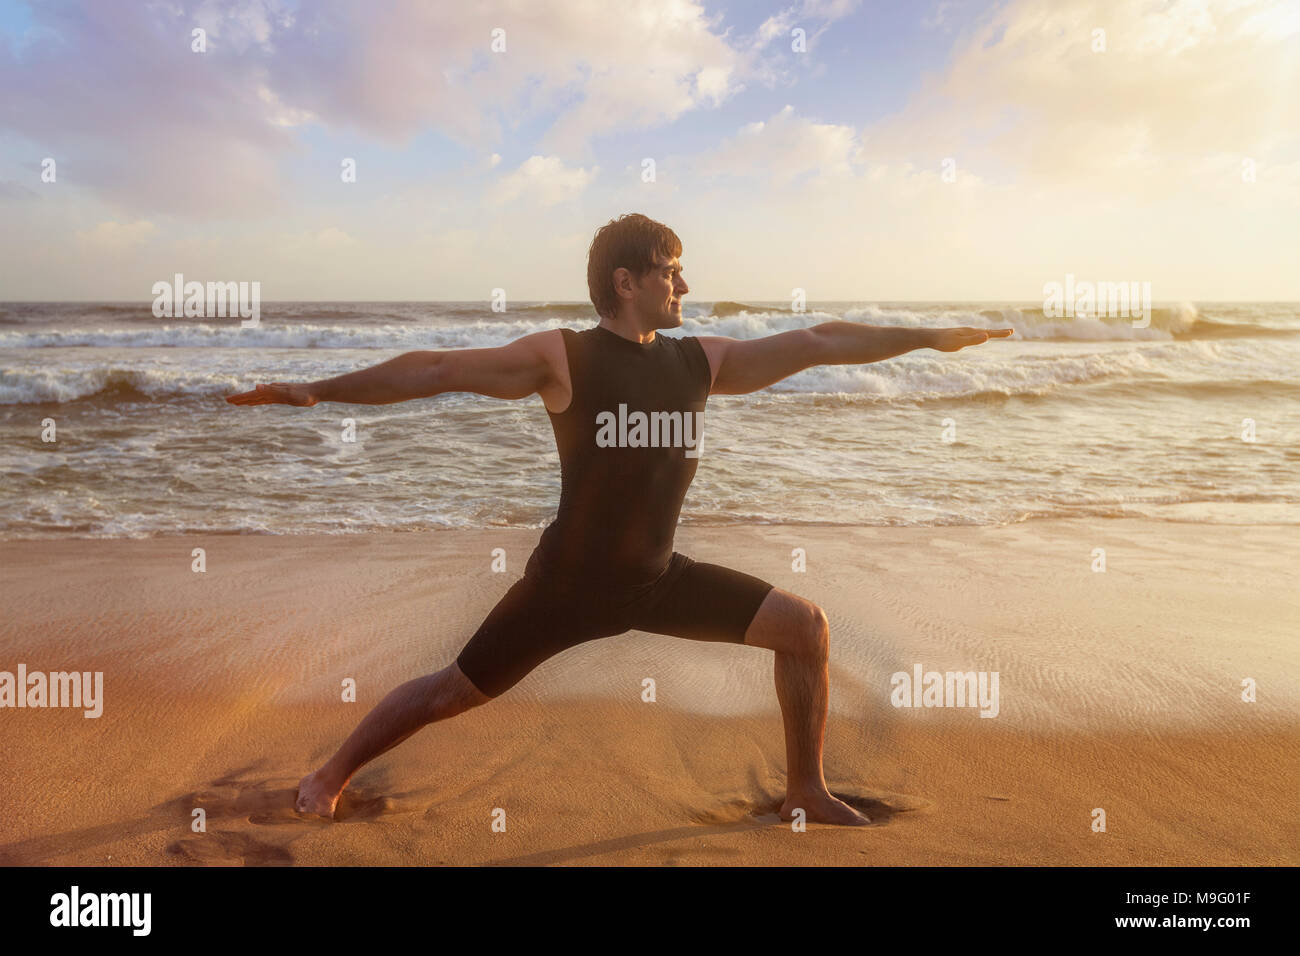 Man Yoga Asana Virabhadrasana 1 Warrior Pose am Strand Stockfoto